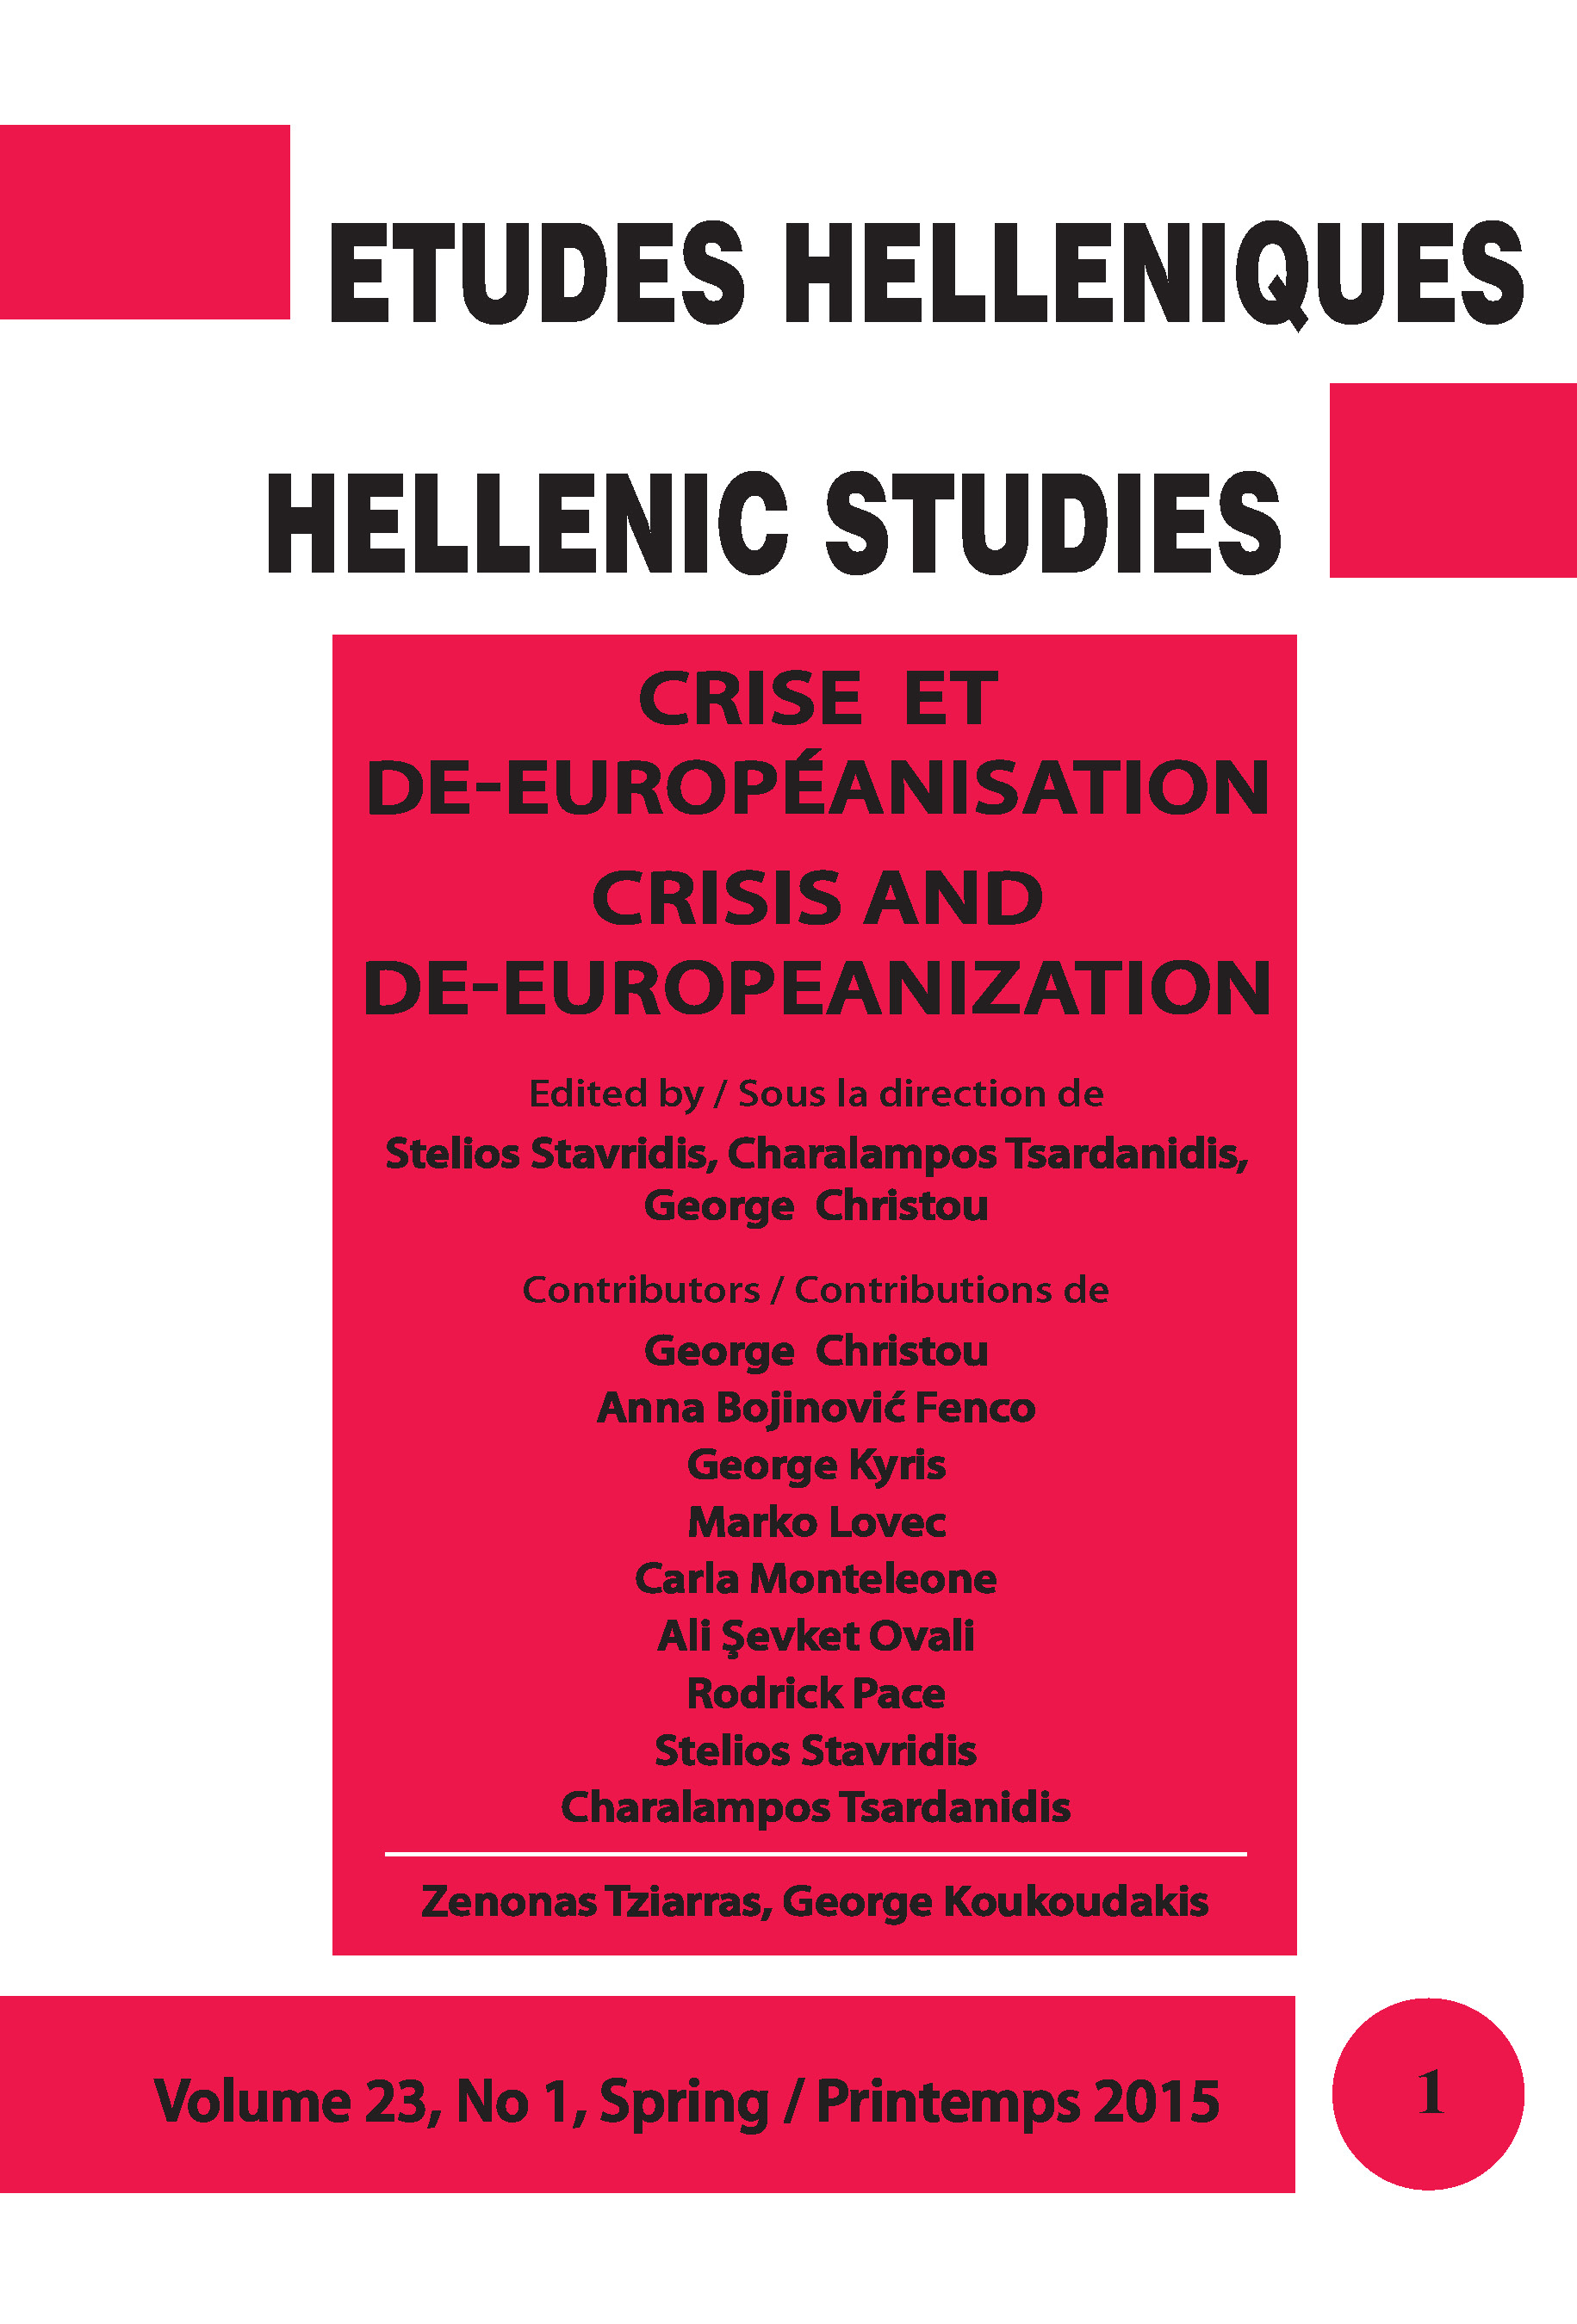 CRISE ET DE-EUROPÉANISATION / CRISIS AND DE-EUROPEANIZATION